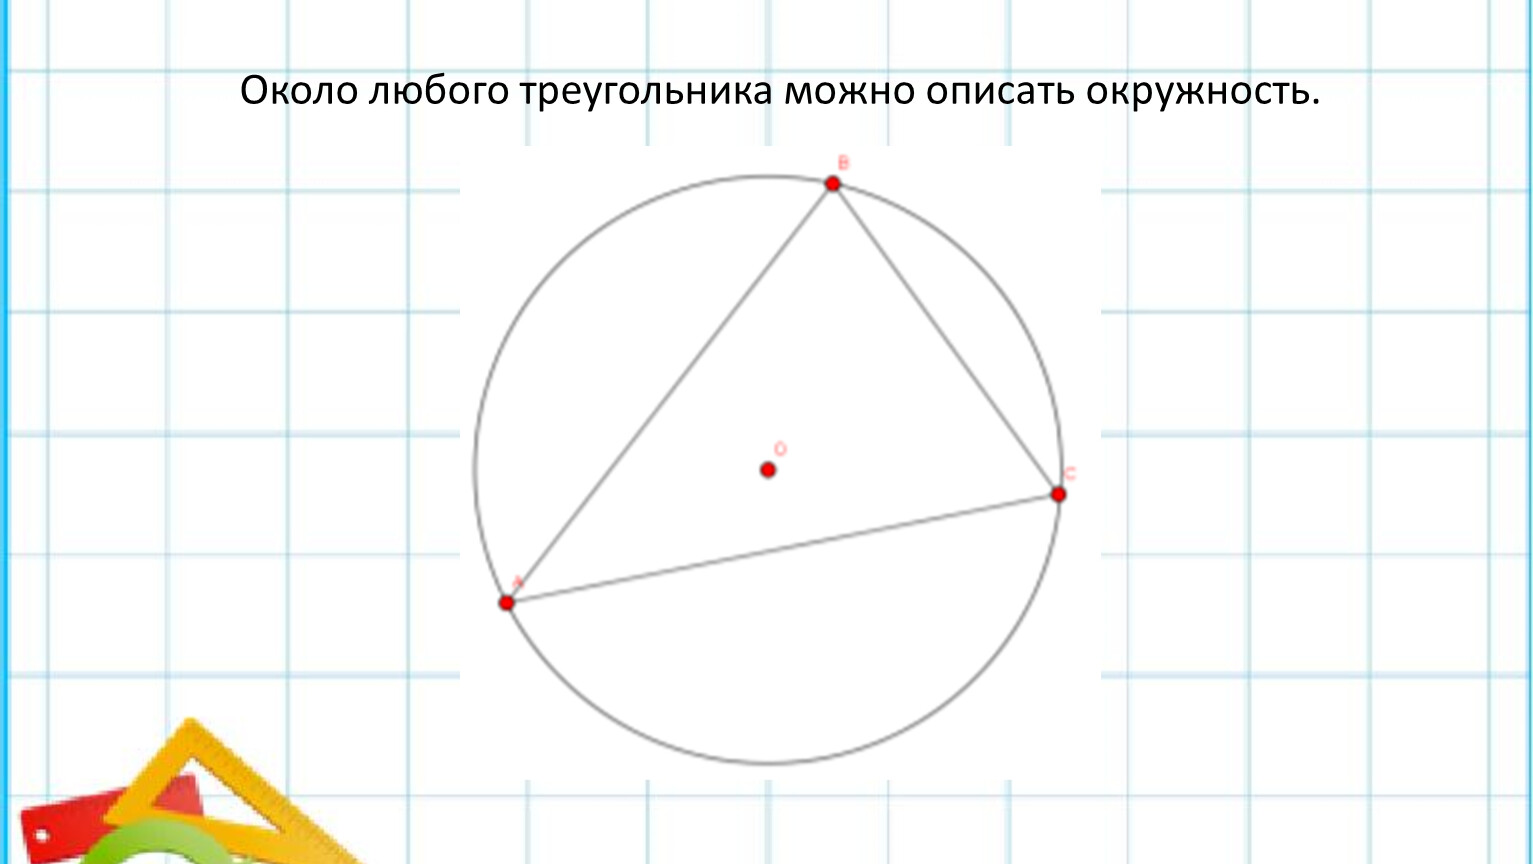 Около любого параллелограмма можно описать окружность. Окружность рисунок. Около любого треугольника можно описать окружность. Вокруг любого треугольника можно описать окружность. Рисунок. Вокруг треугольника можно описать окружность.